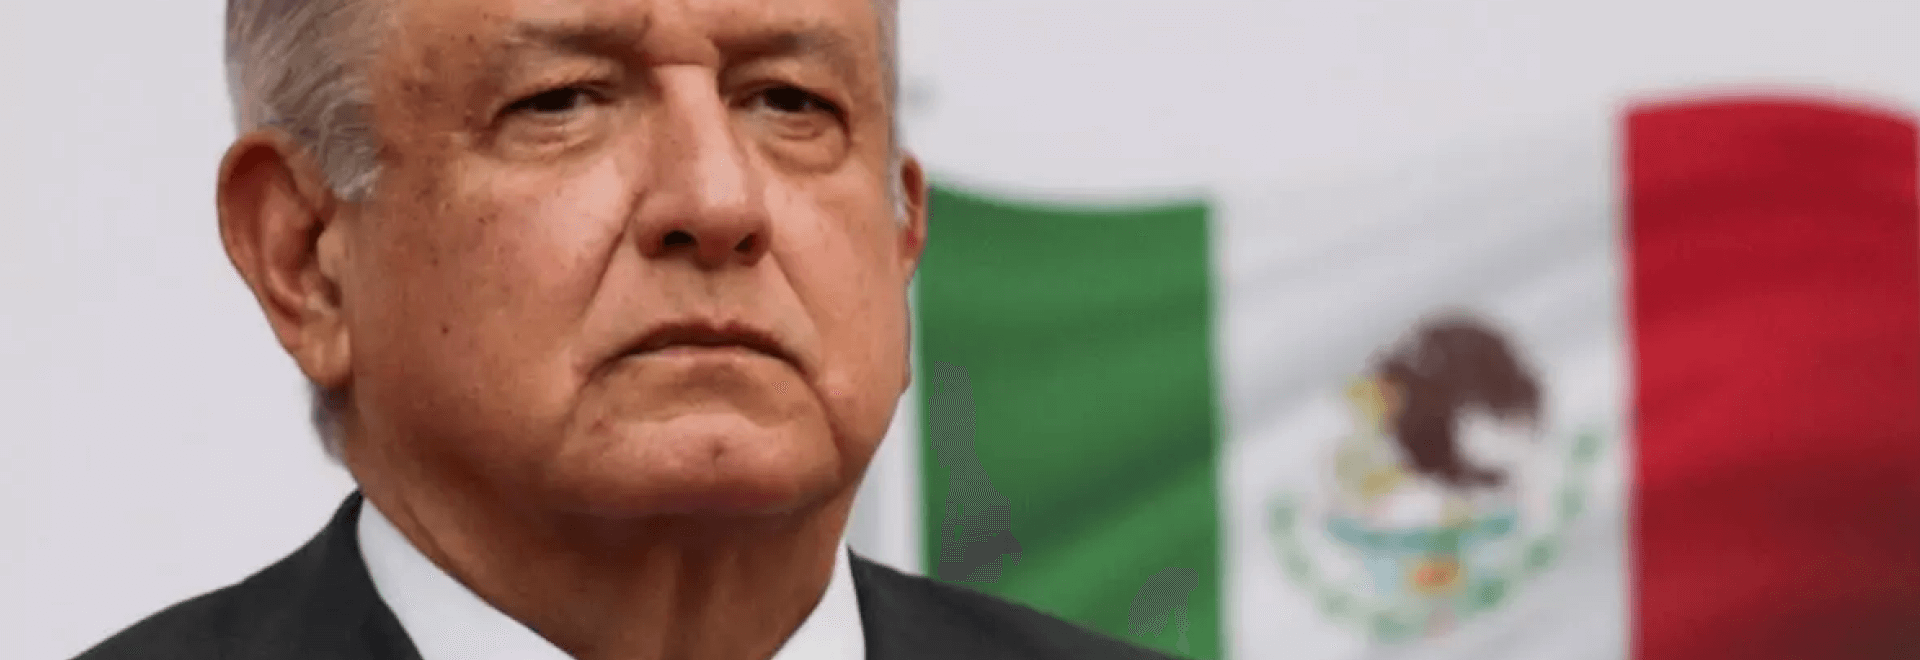 El Presidente de México, contagiado de COVID-19